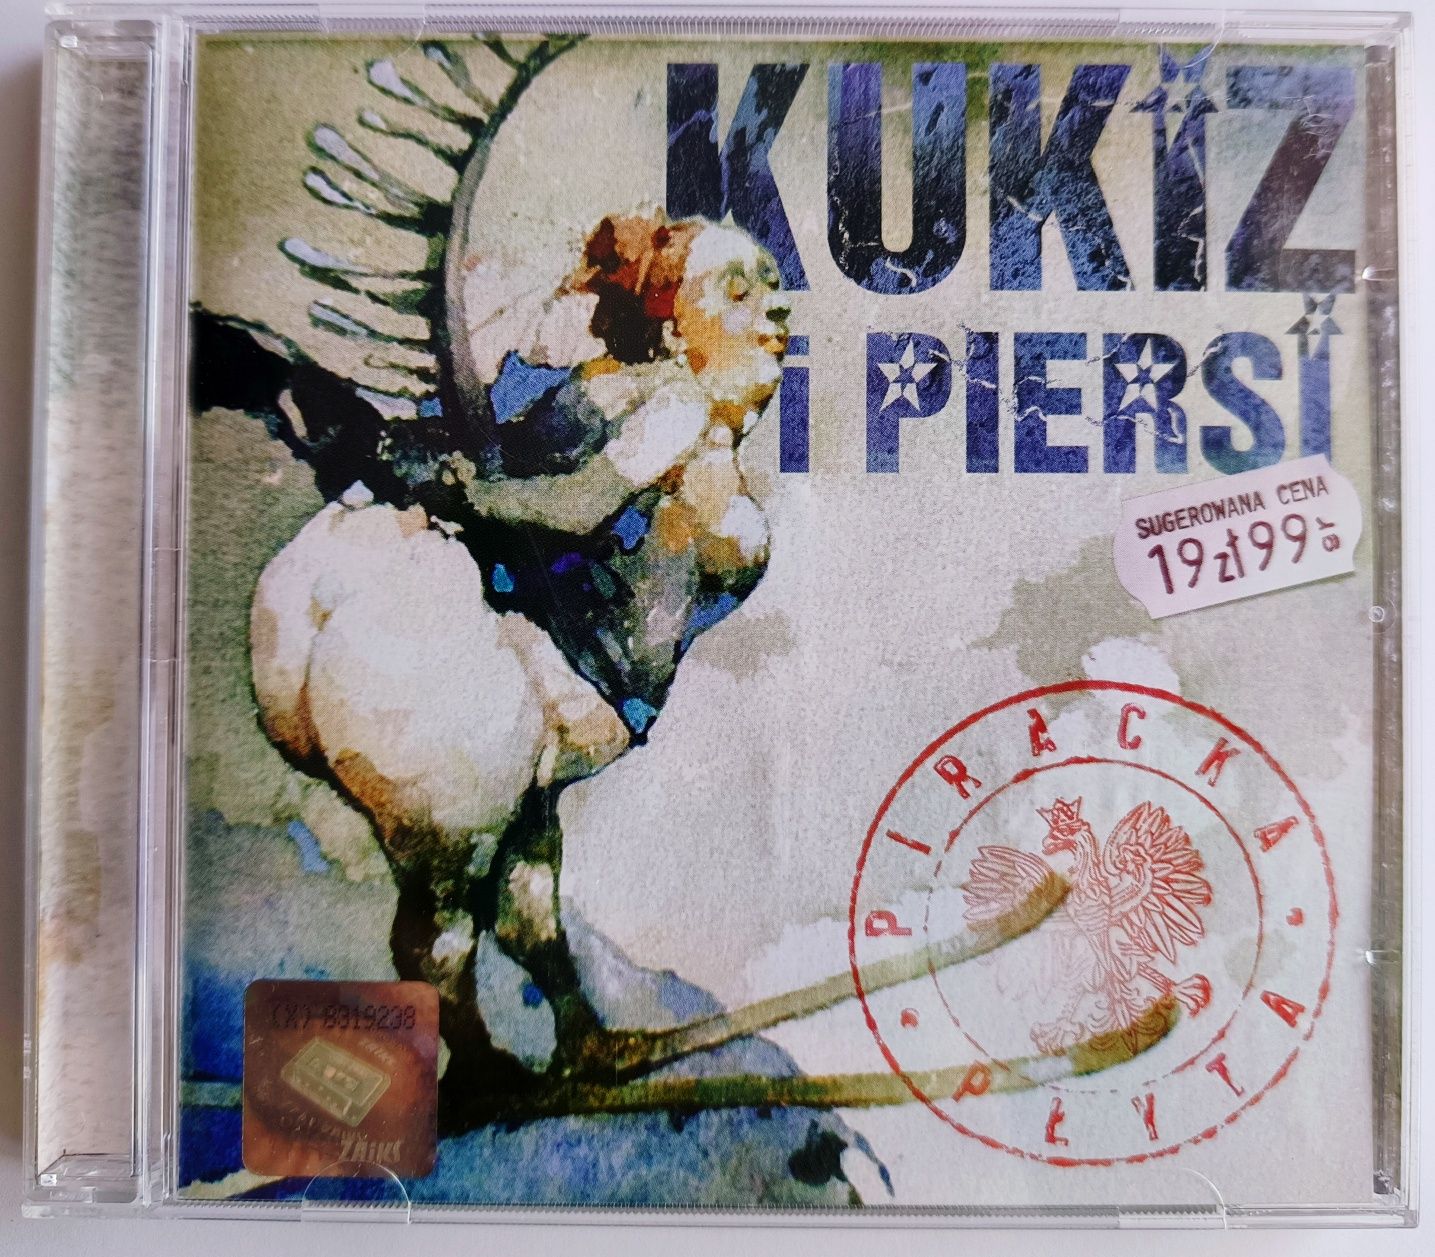 Kukiz I Piersi Piracka Płyta 2004r